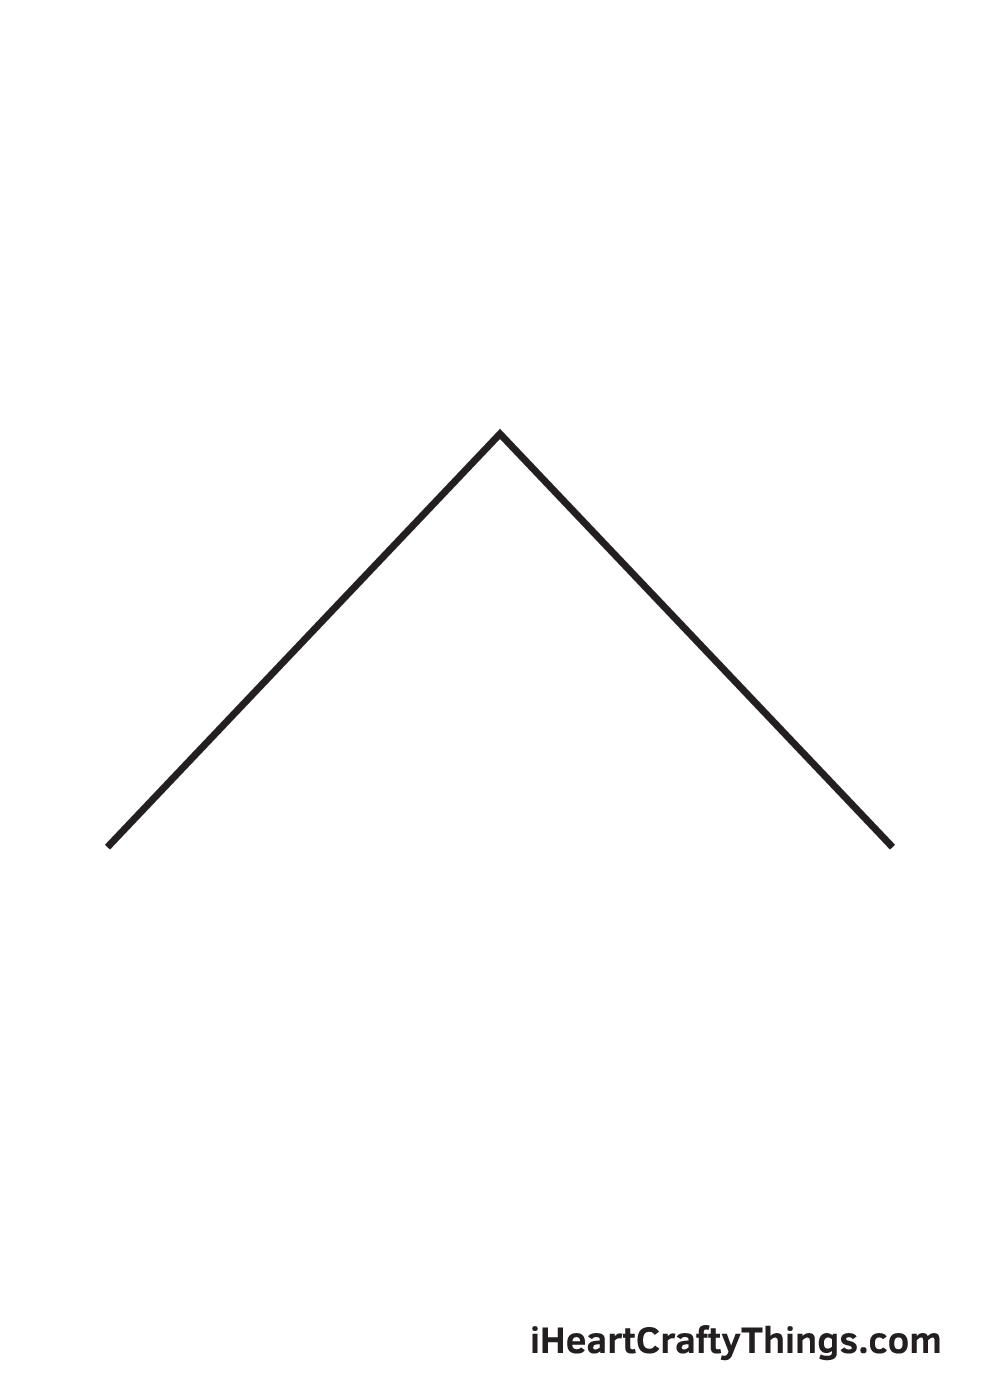 Pyramid DRAWING – STEP 2 - Hướng dẫn cách vẽ kim tự tháp đơn giản với 9 bước